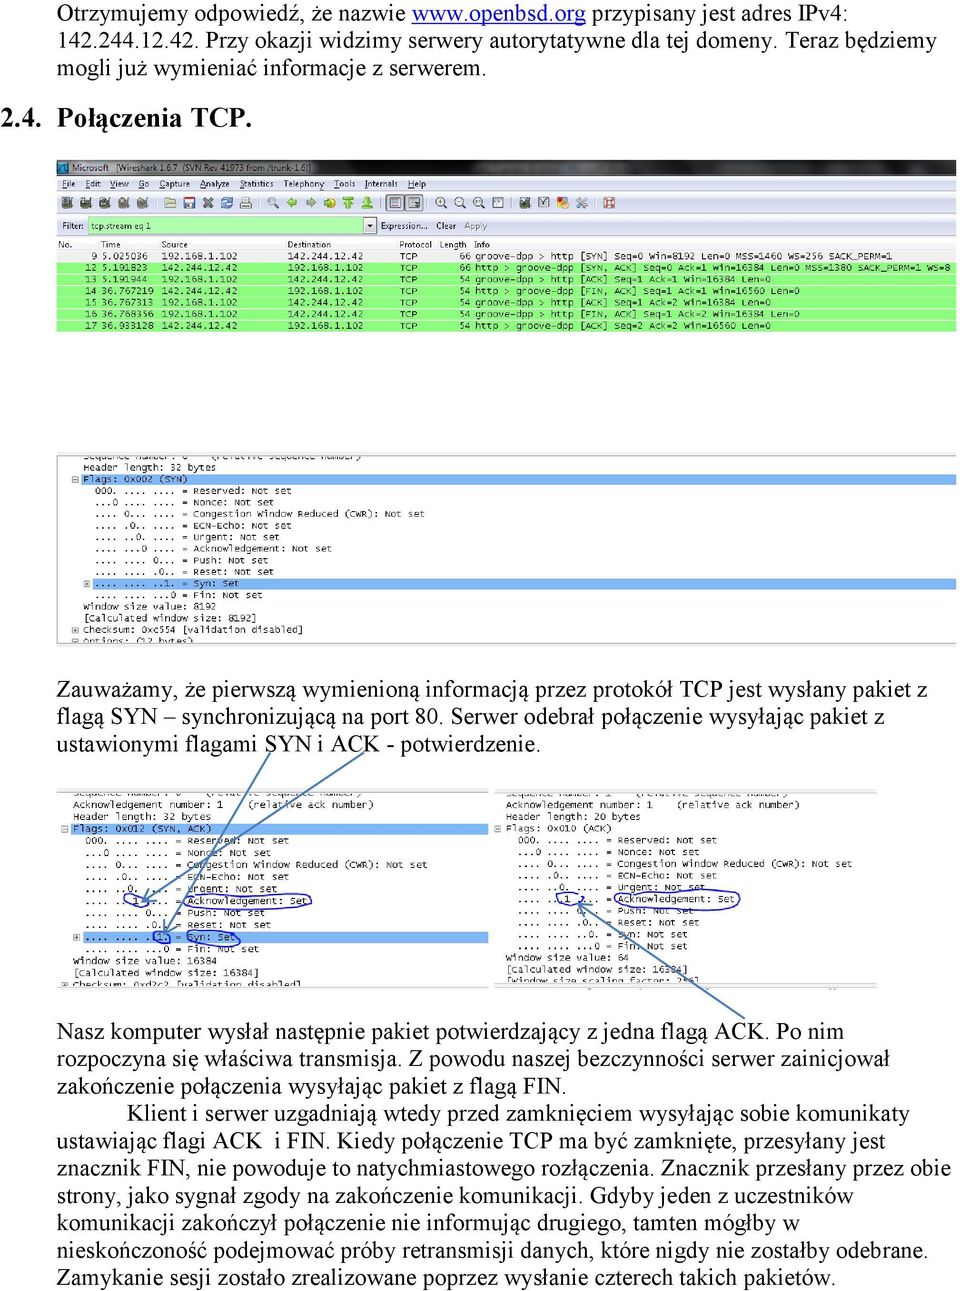 Zauważamy, że pierwszą wymienioną informacją przez protokół TCP jest wysłany pakiet z flagą SYN synchronizującą na port 80.